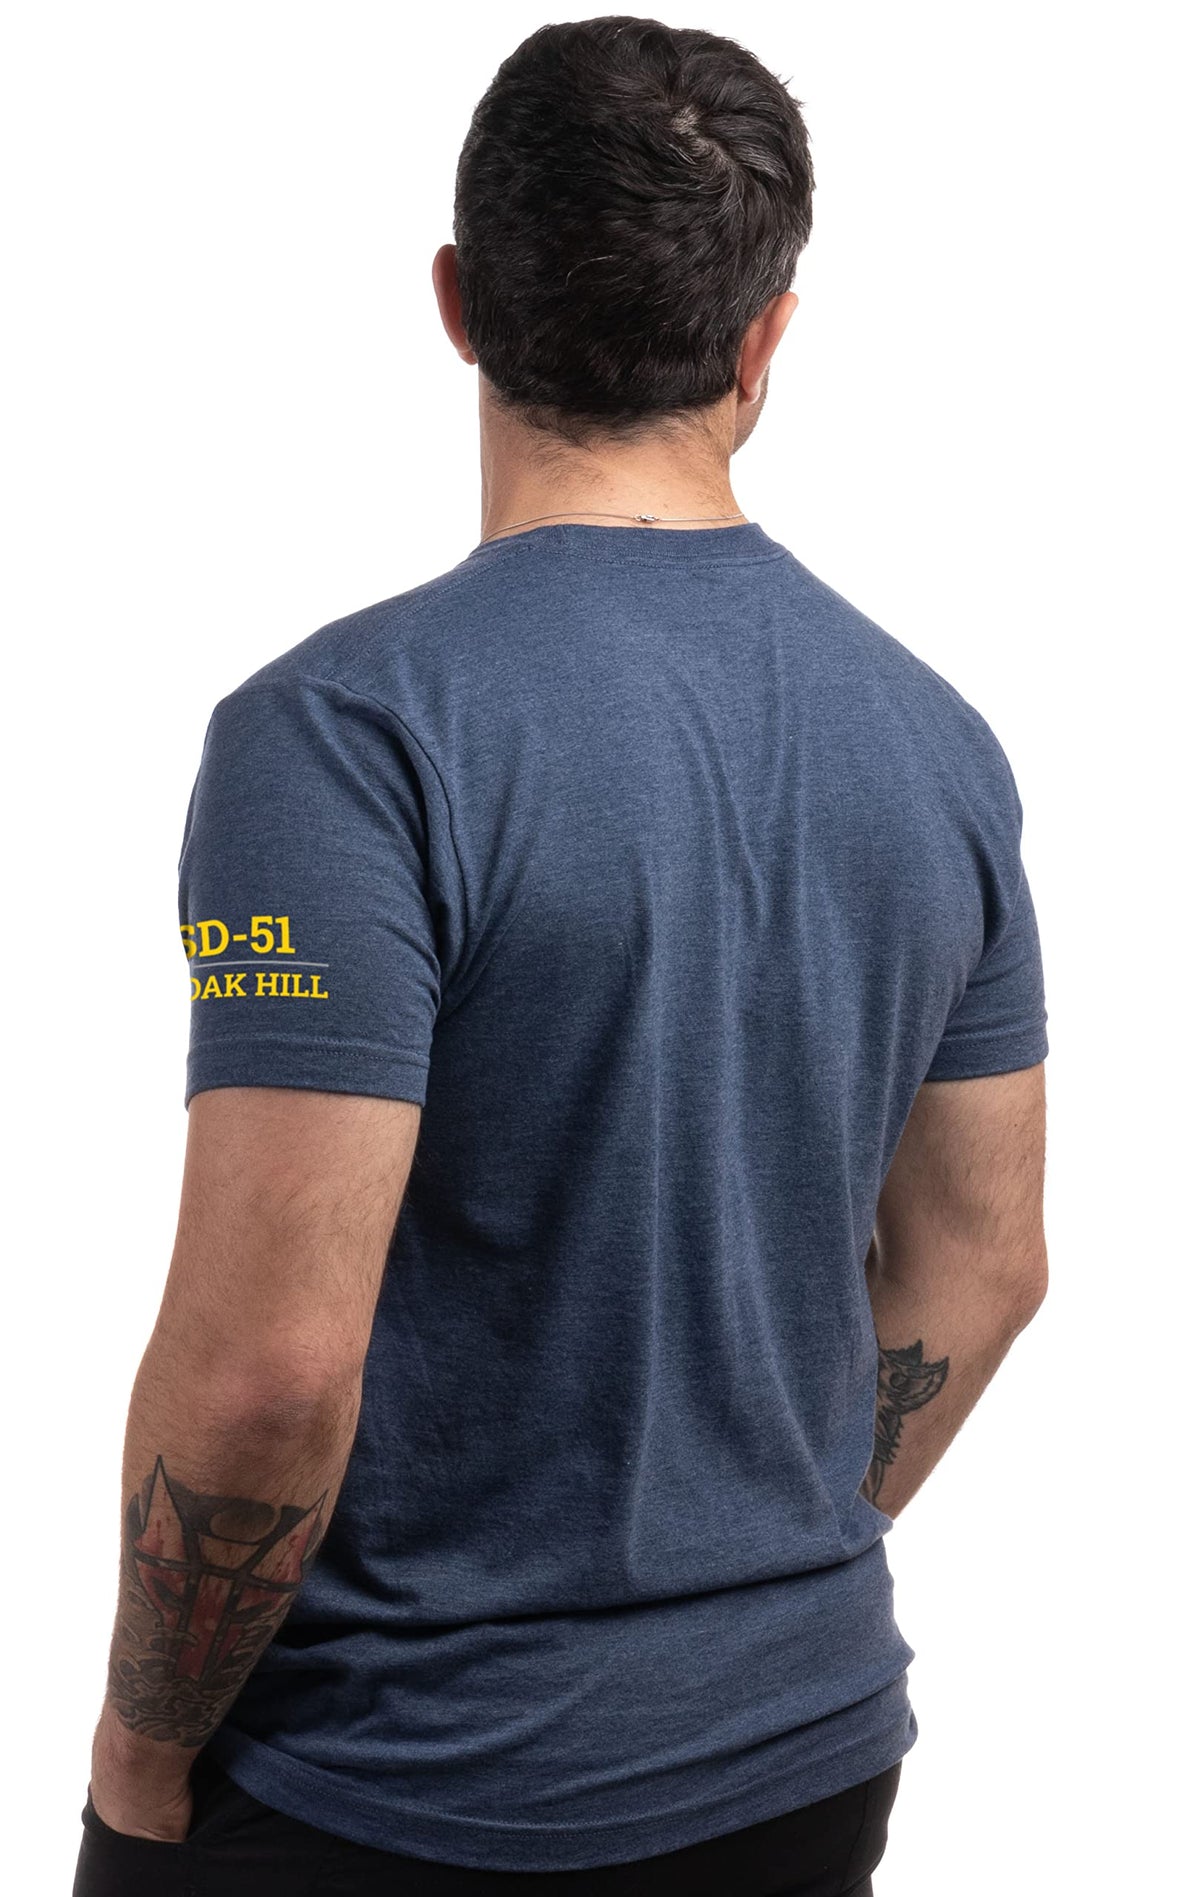 USS Oak Hill, LSD-51 | U.S. Navy Sailor Veteran USN United States Naval T-shirt for Men Women